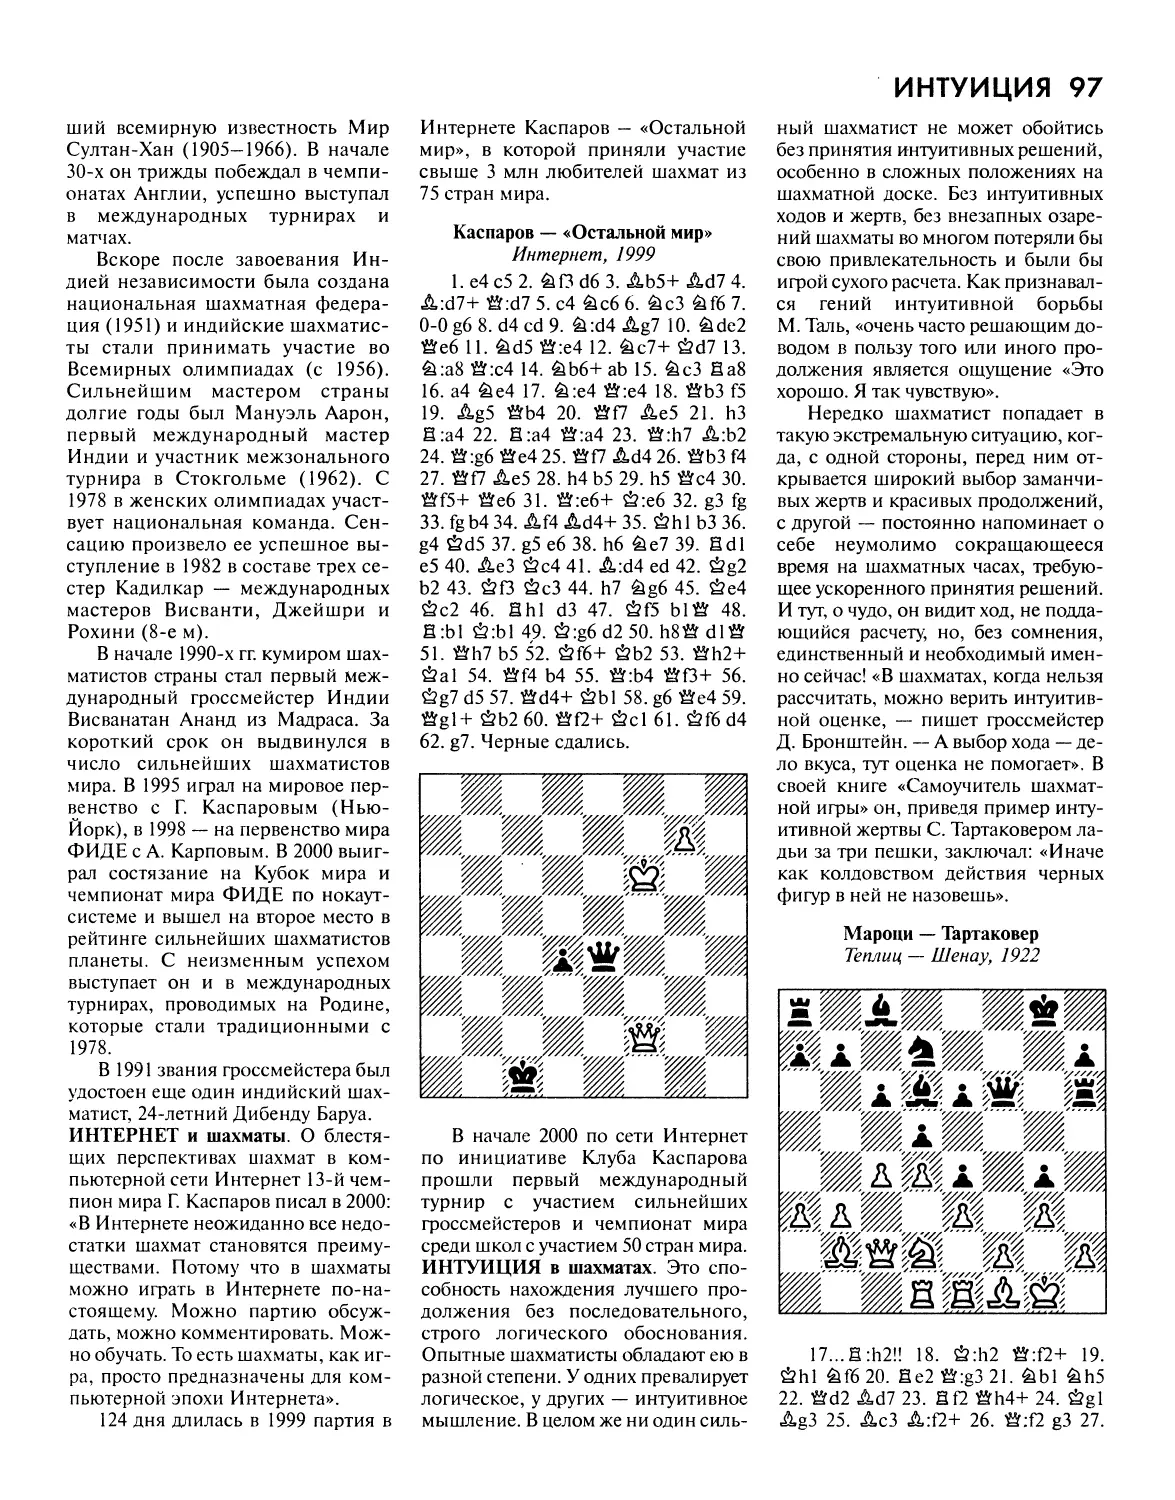 Интернет и шахматы
Интуиция в шахматах